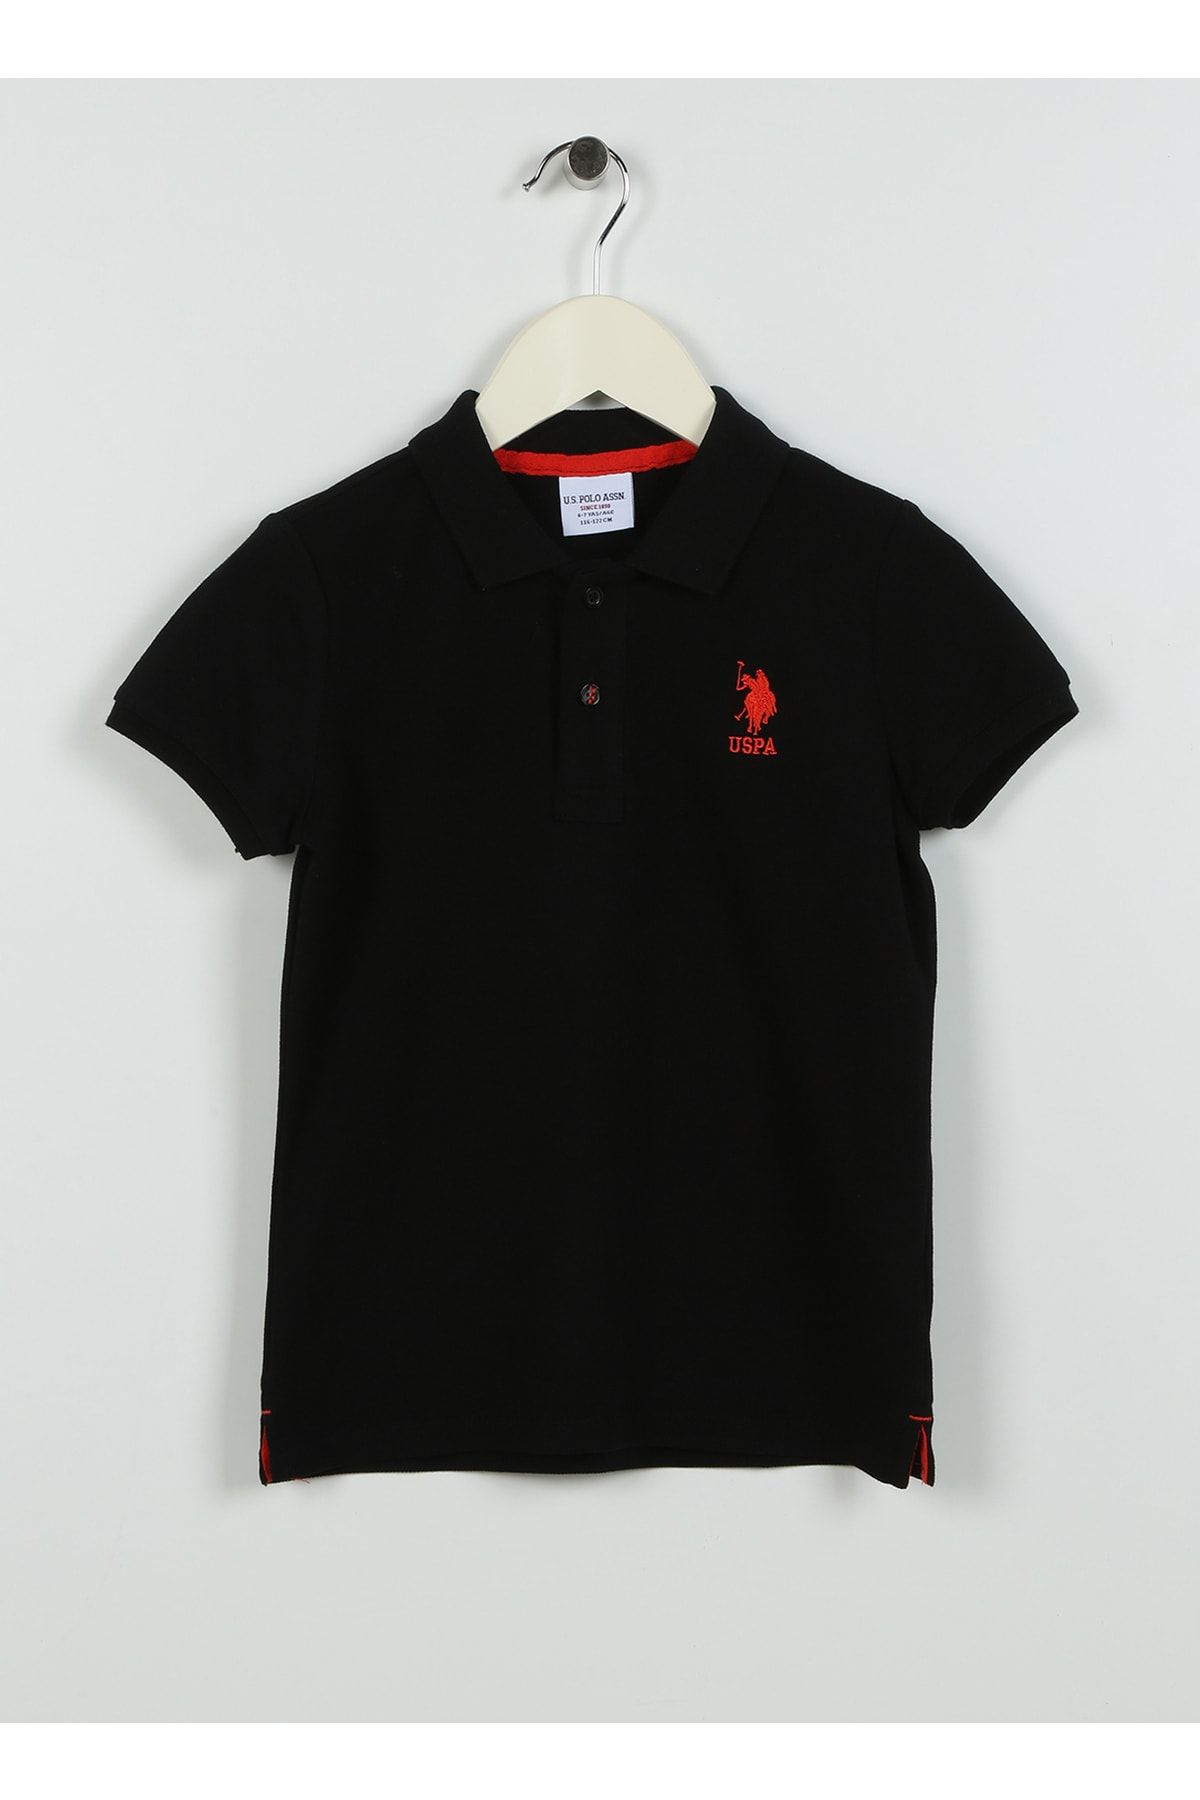 U.S. Polo Assn. Düz Siyah Erkek Çocuk T-shirt Tp01ıy023